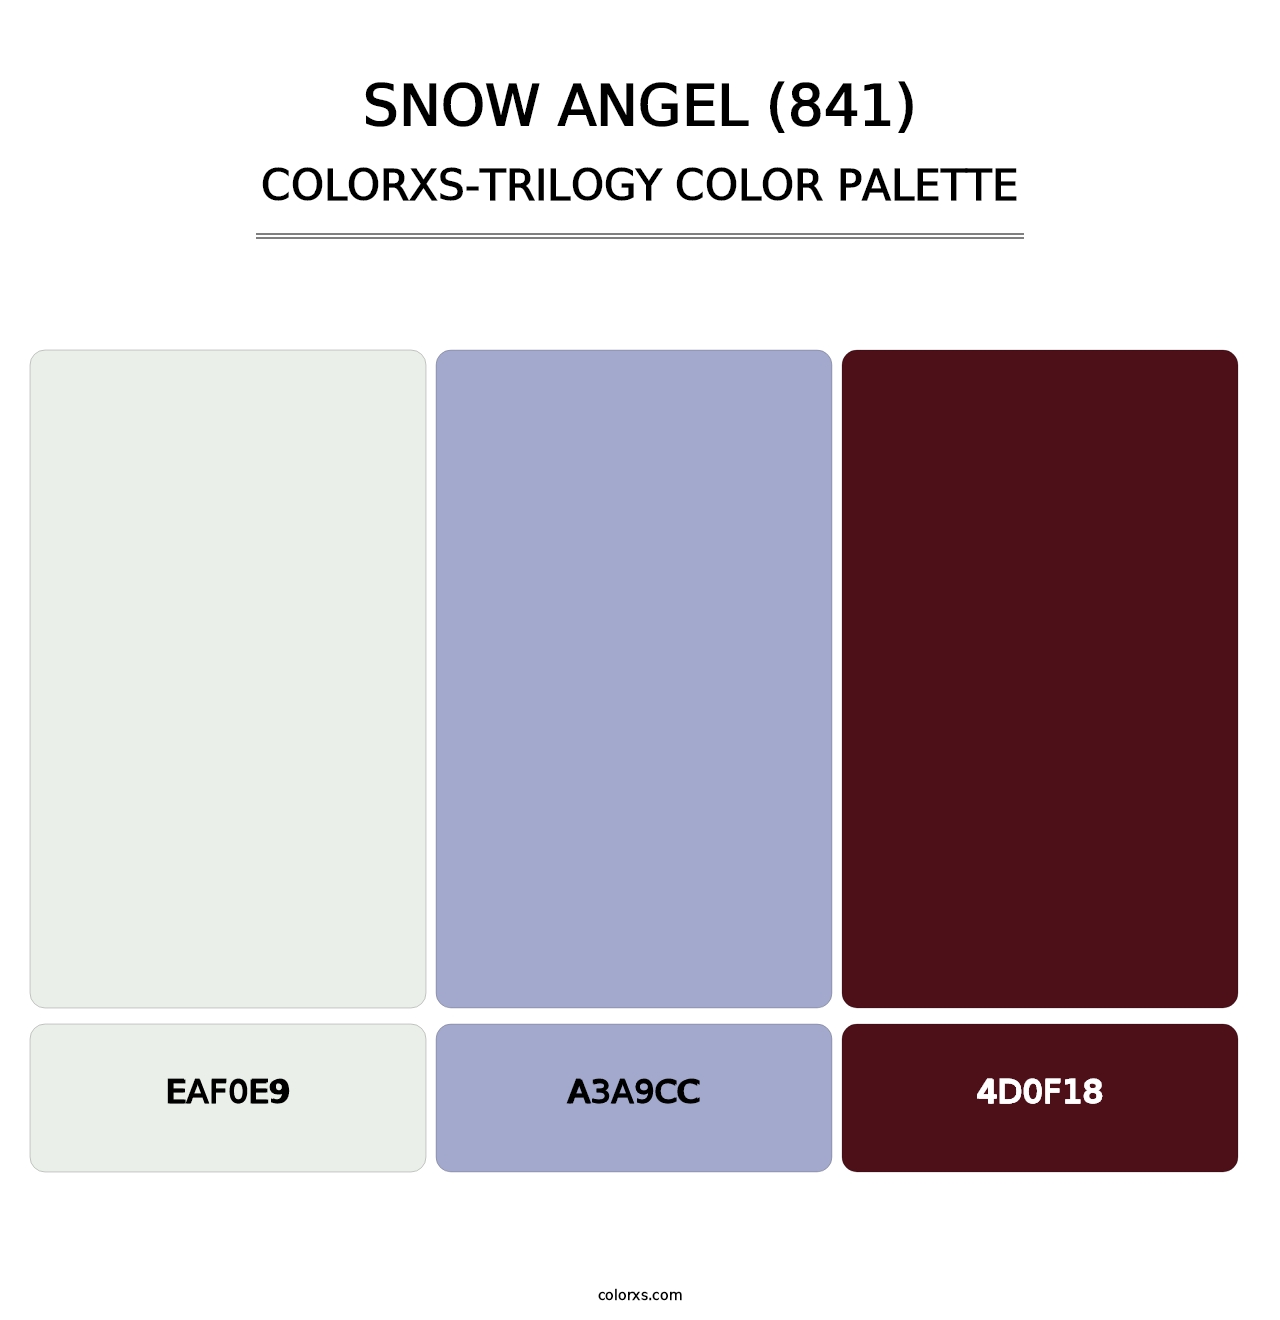 Snow Angel (841) - Colorxs Trilogy Palette